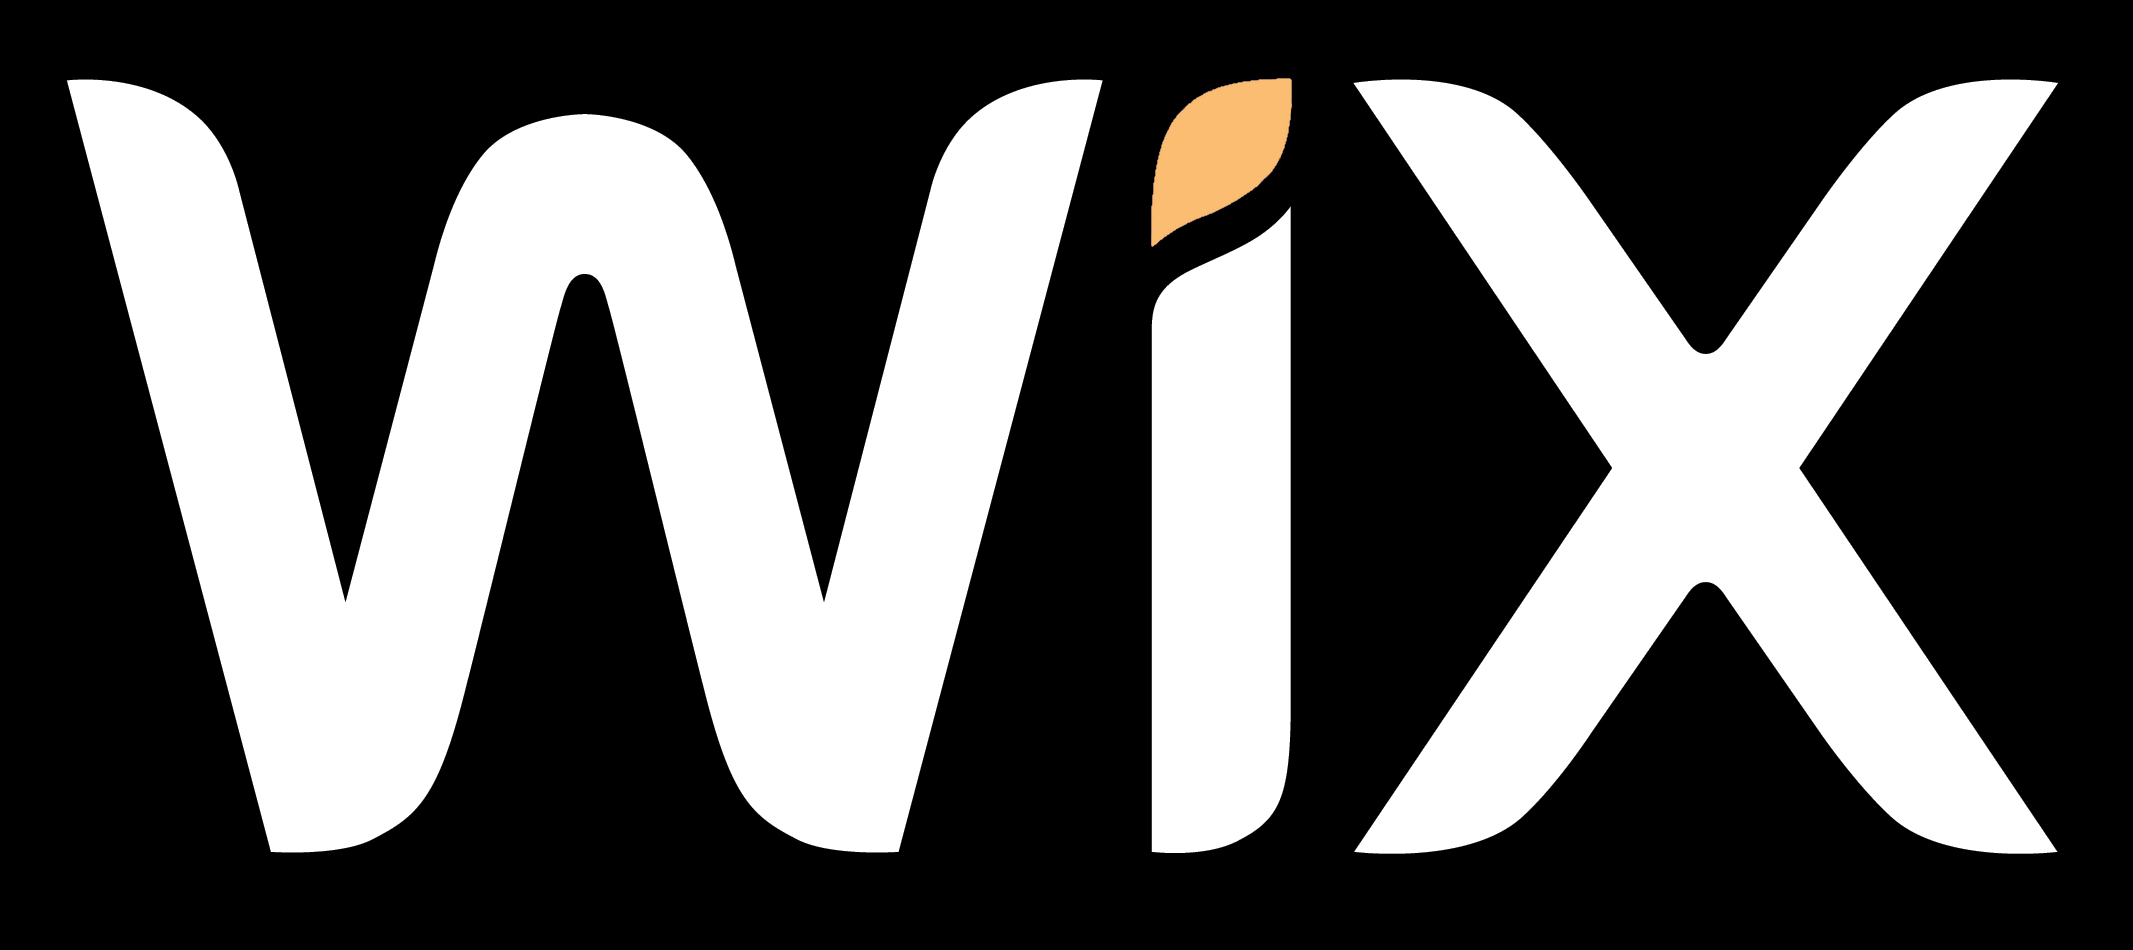 Wix.com – Logos Download - 2133 x 950 png 86kB